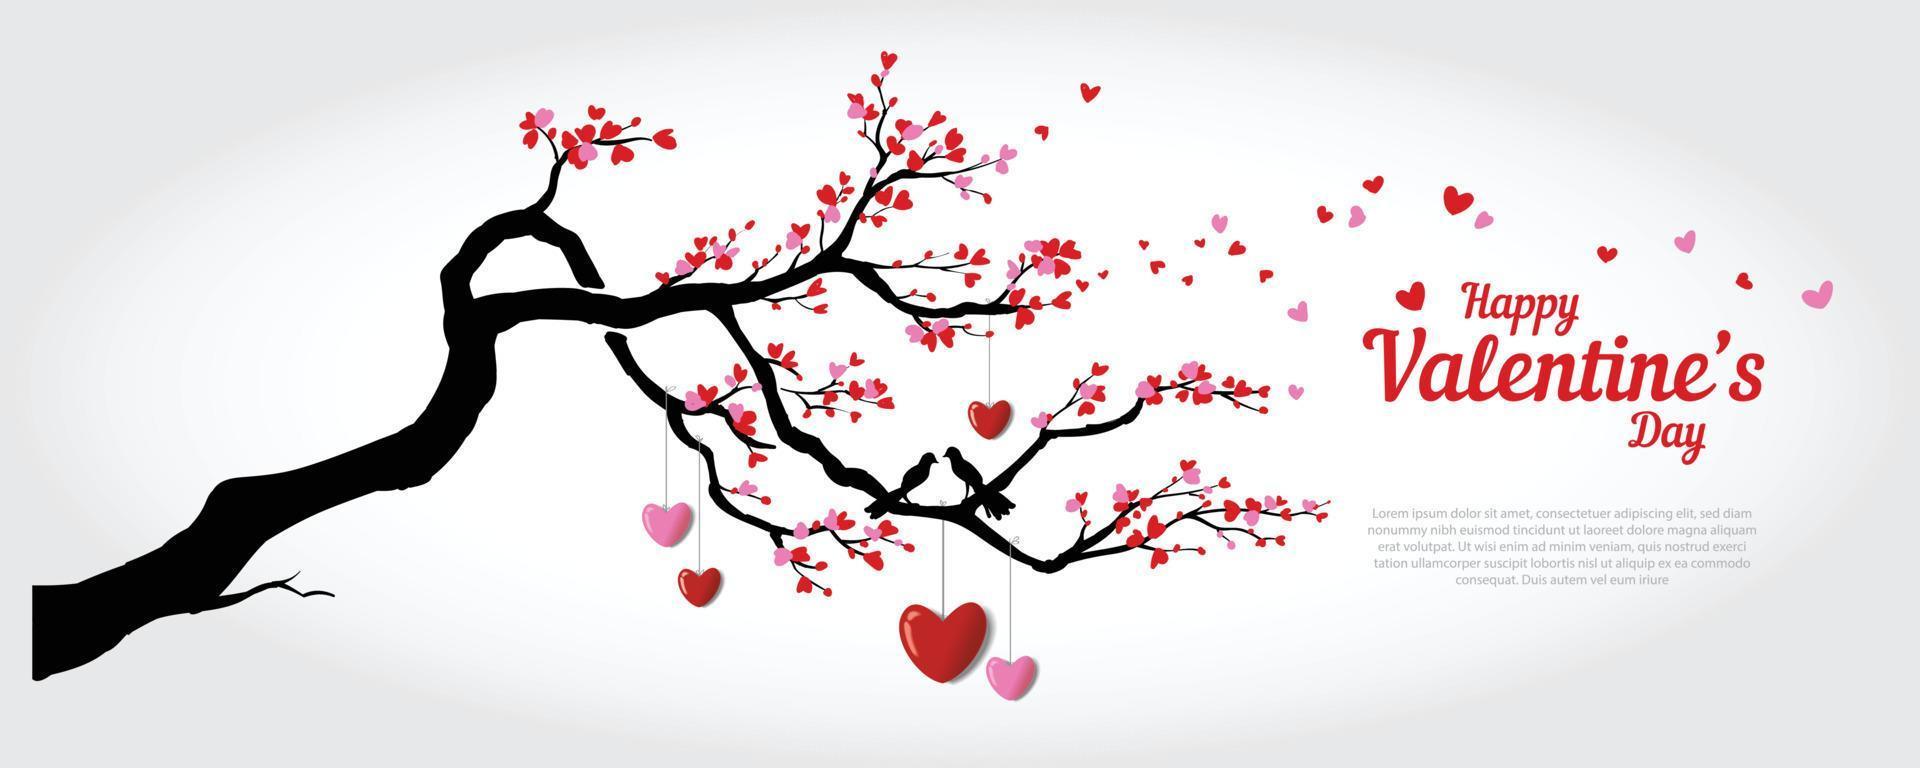 kärleksträd vektor mall. denna vektor visar ett kärleksträd för alla hjärtans dag-hälsningar.